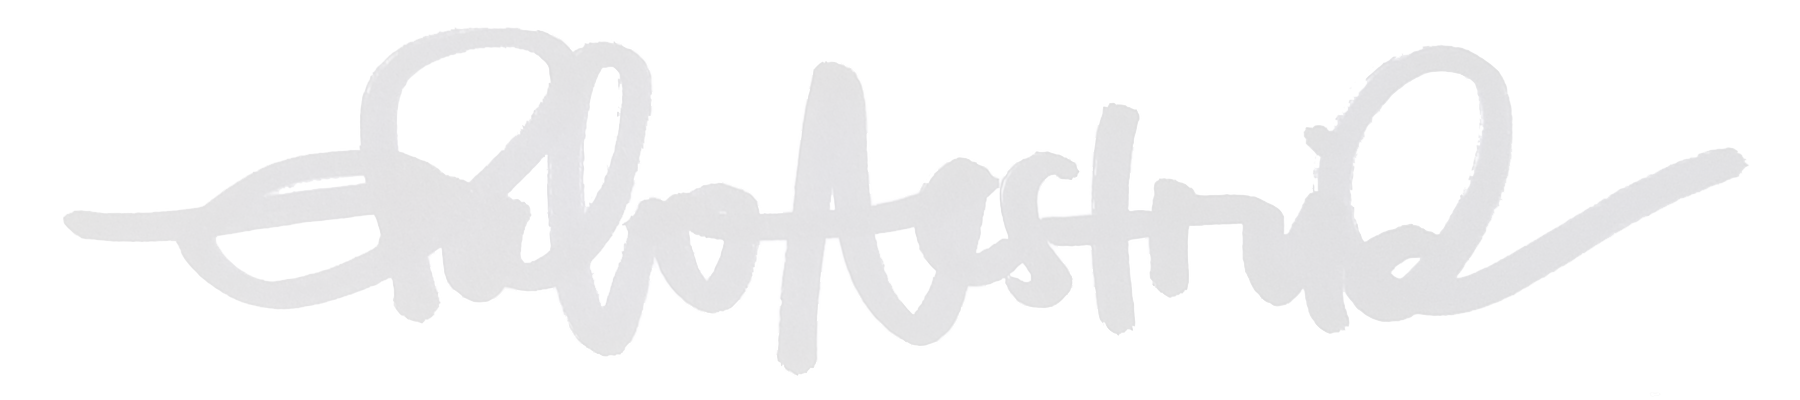 CheloAestrid-logo-white